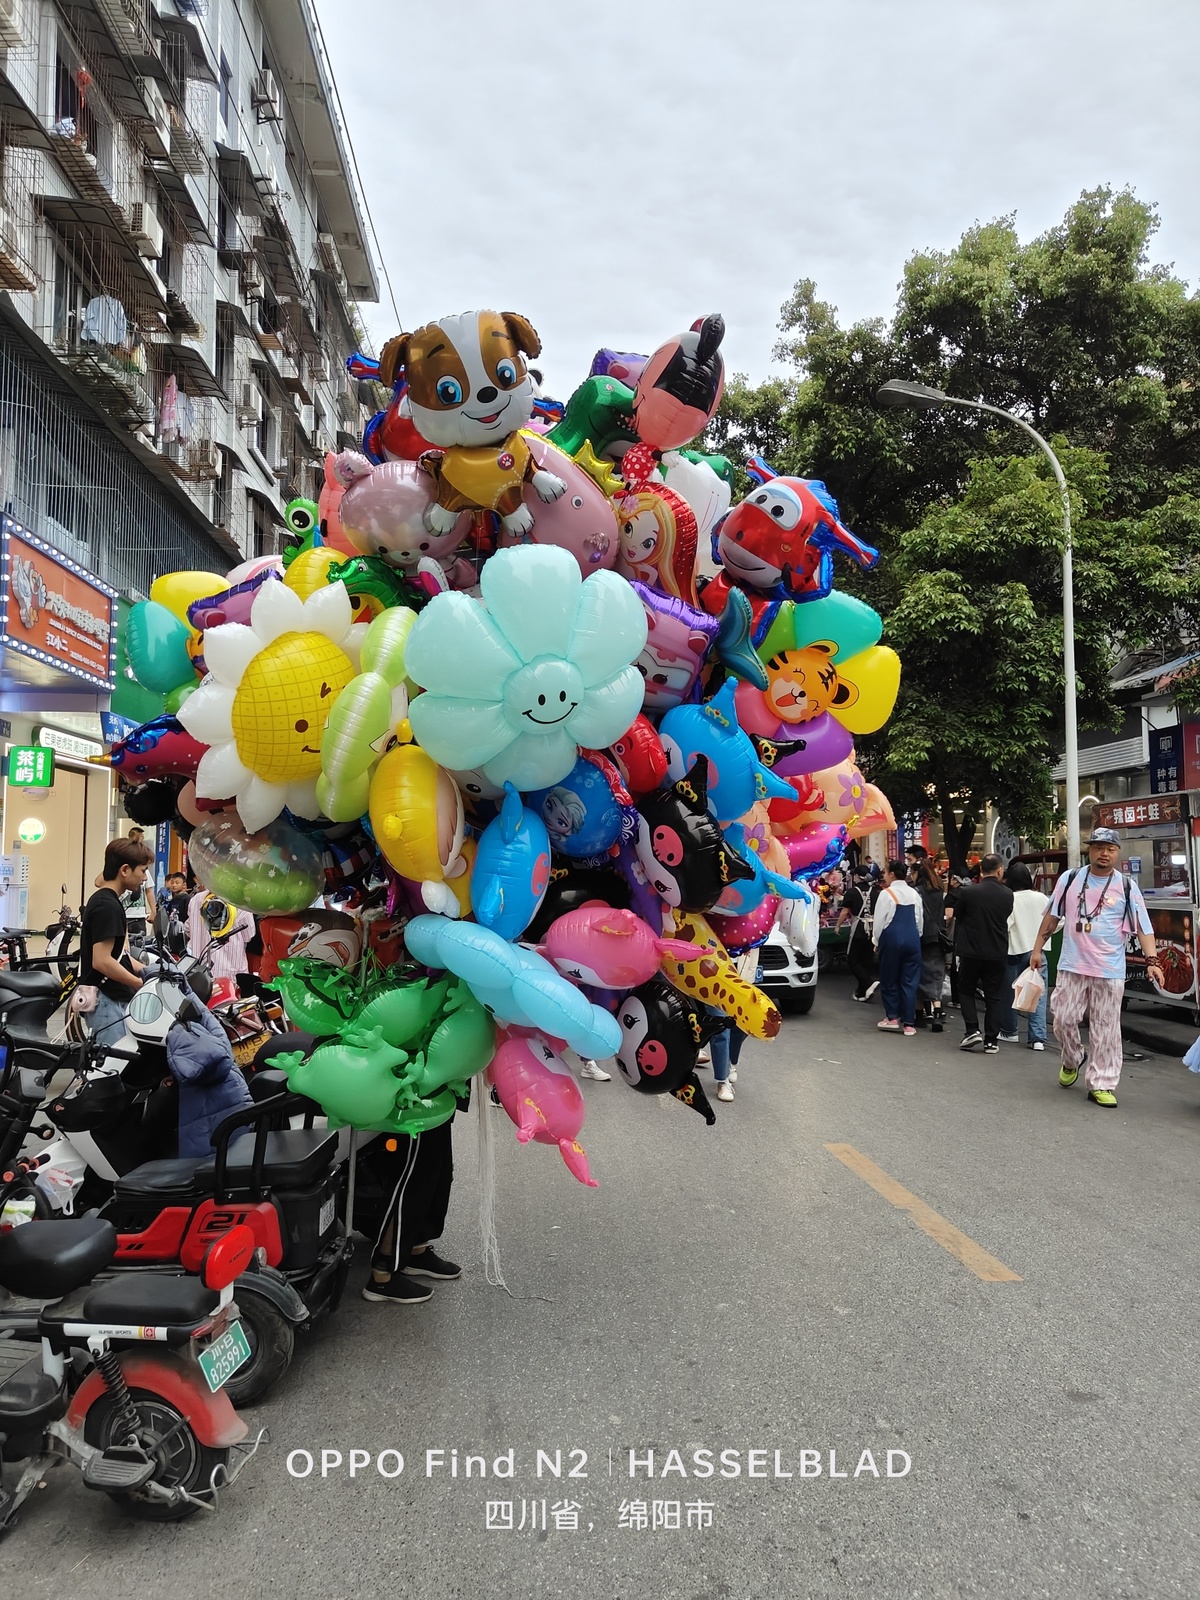 摩托车上的人售卖玩具和气球